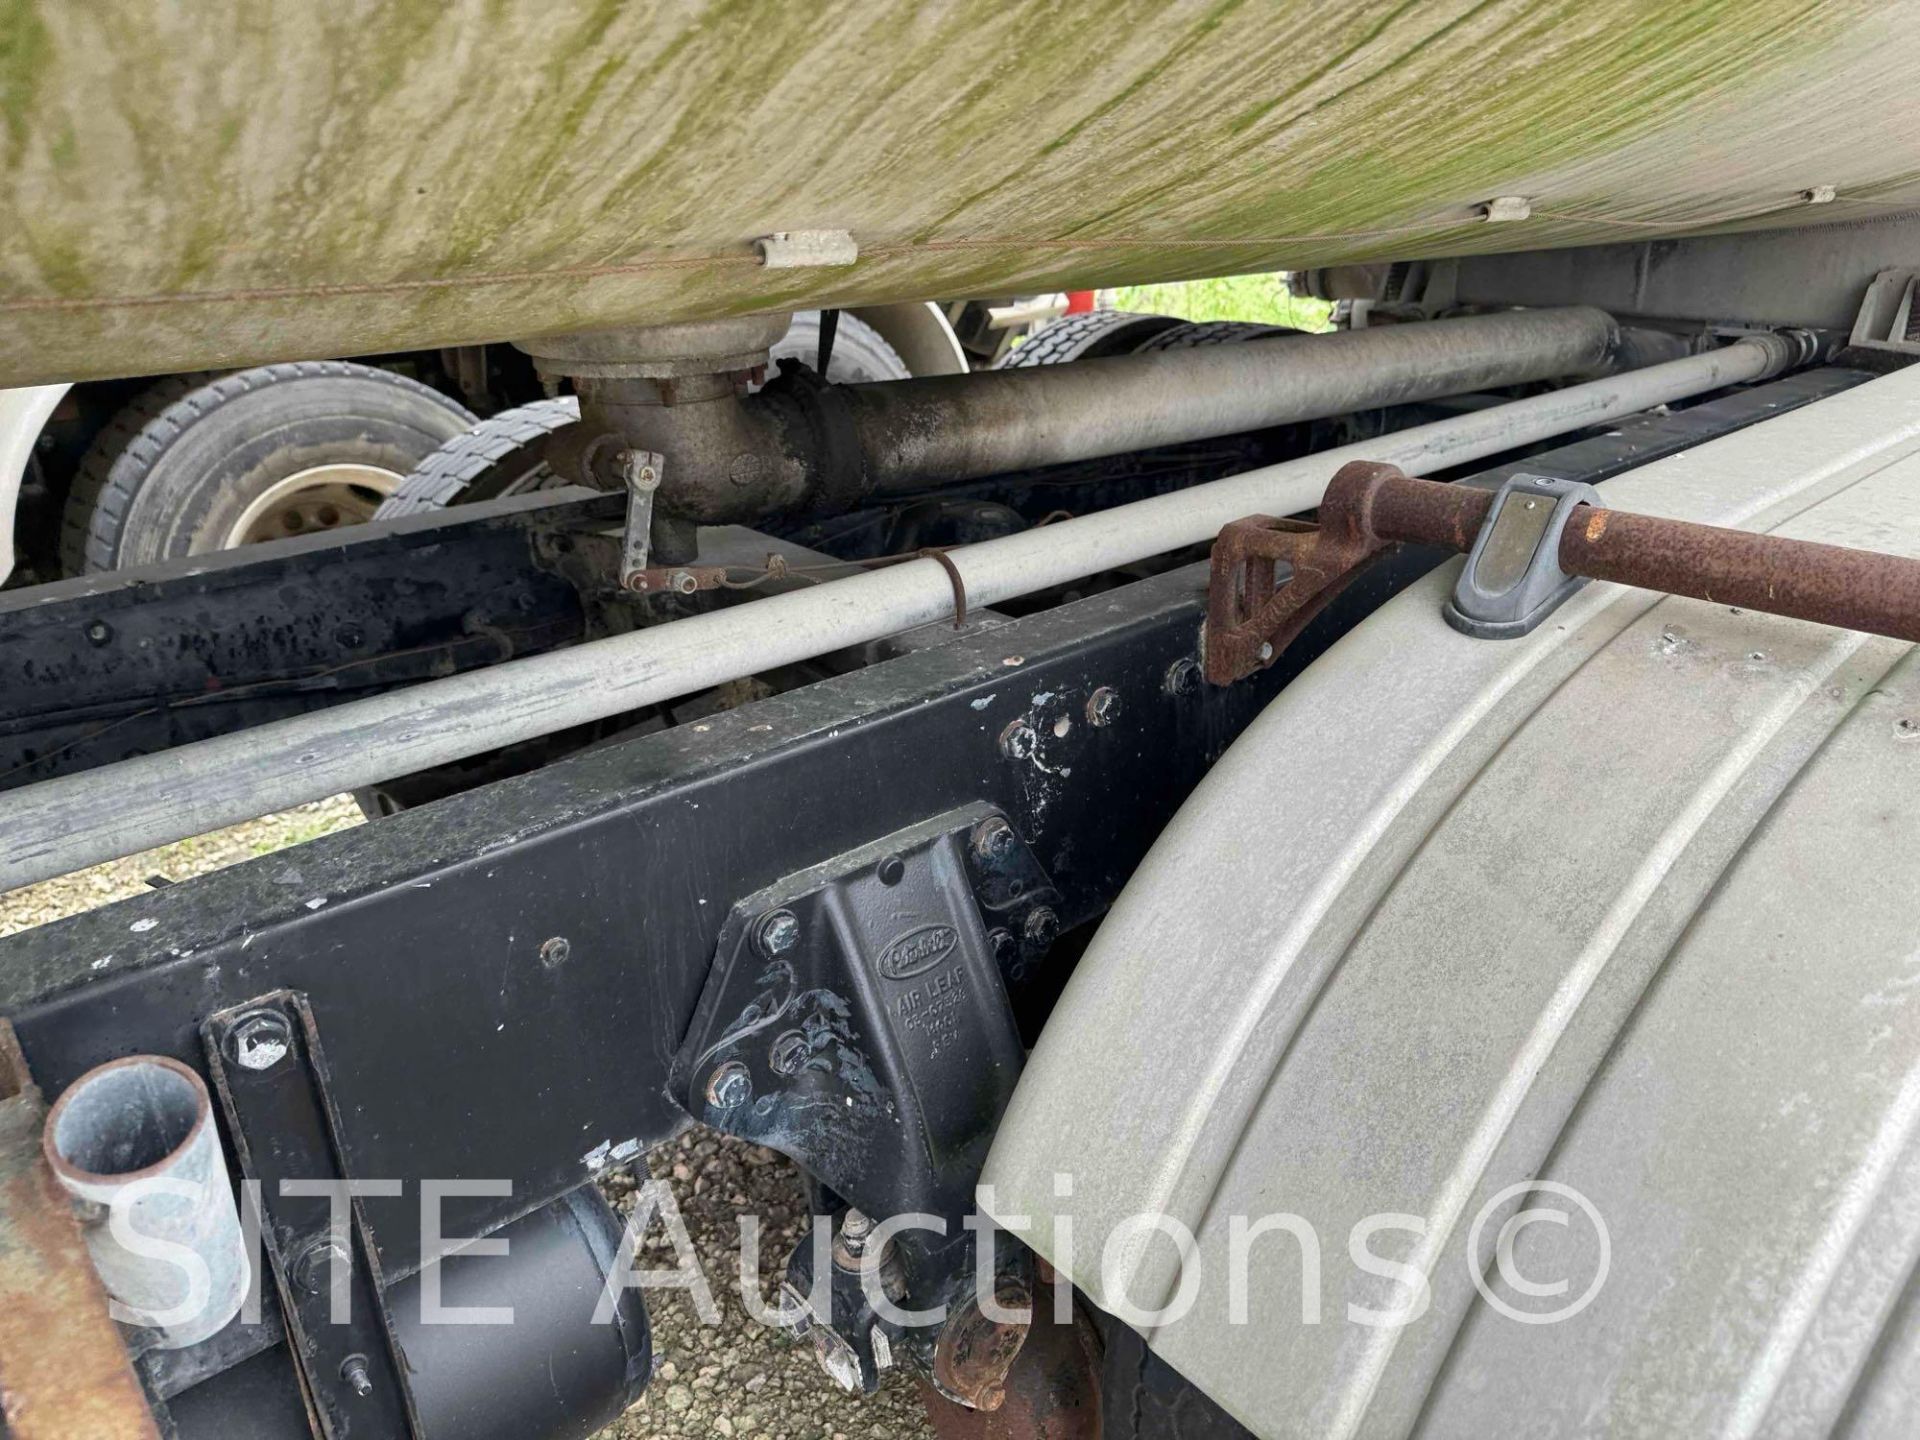 1998 Peterbilt 377 T/A Fuel Truck - Image 29 of 39